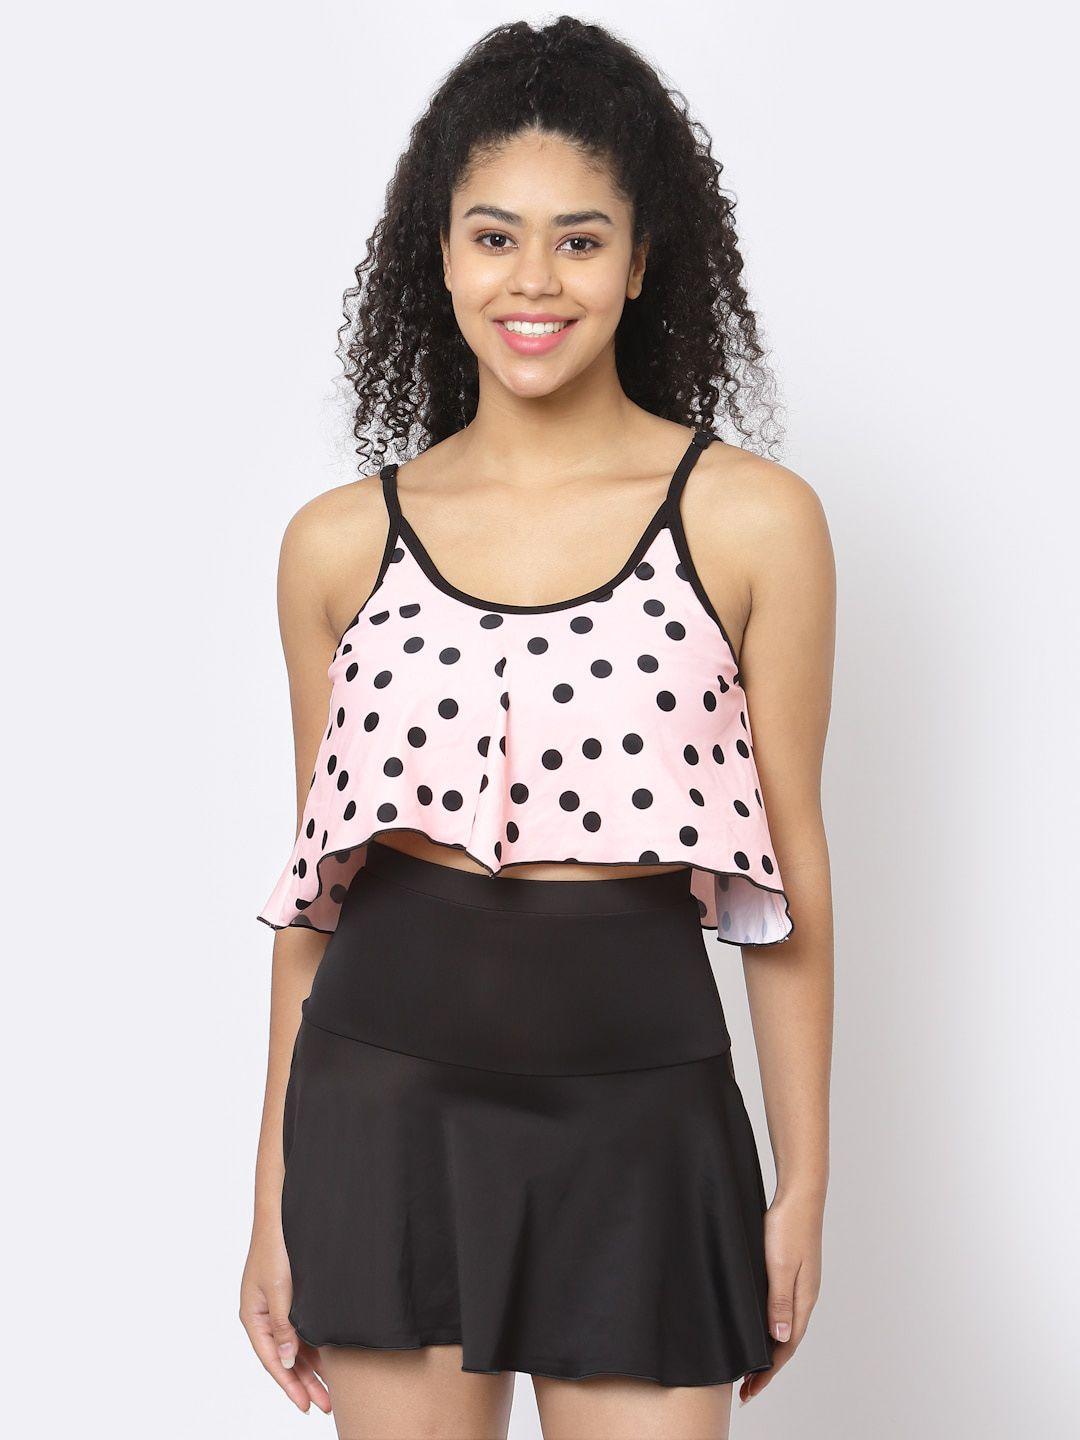 cukoo polka-dot printed padded top with skirt swim set